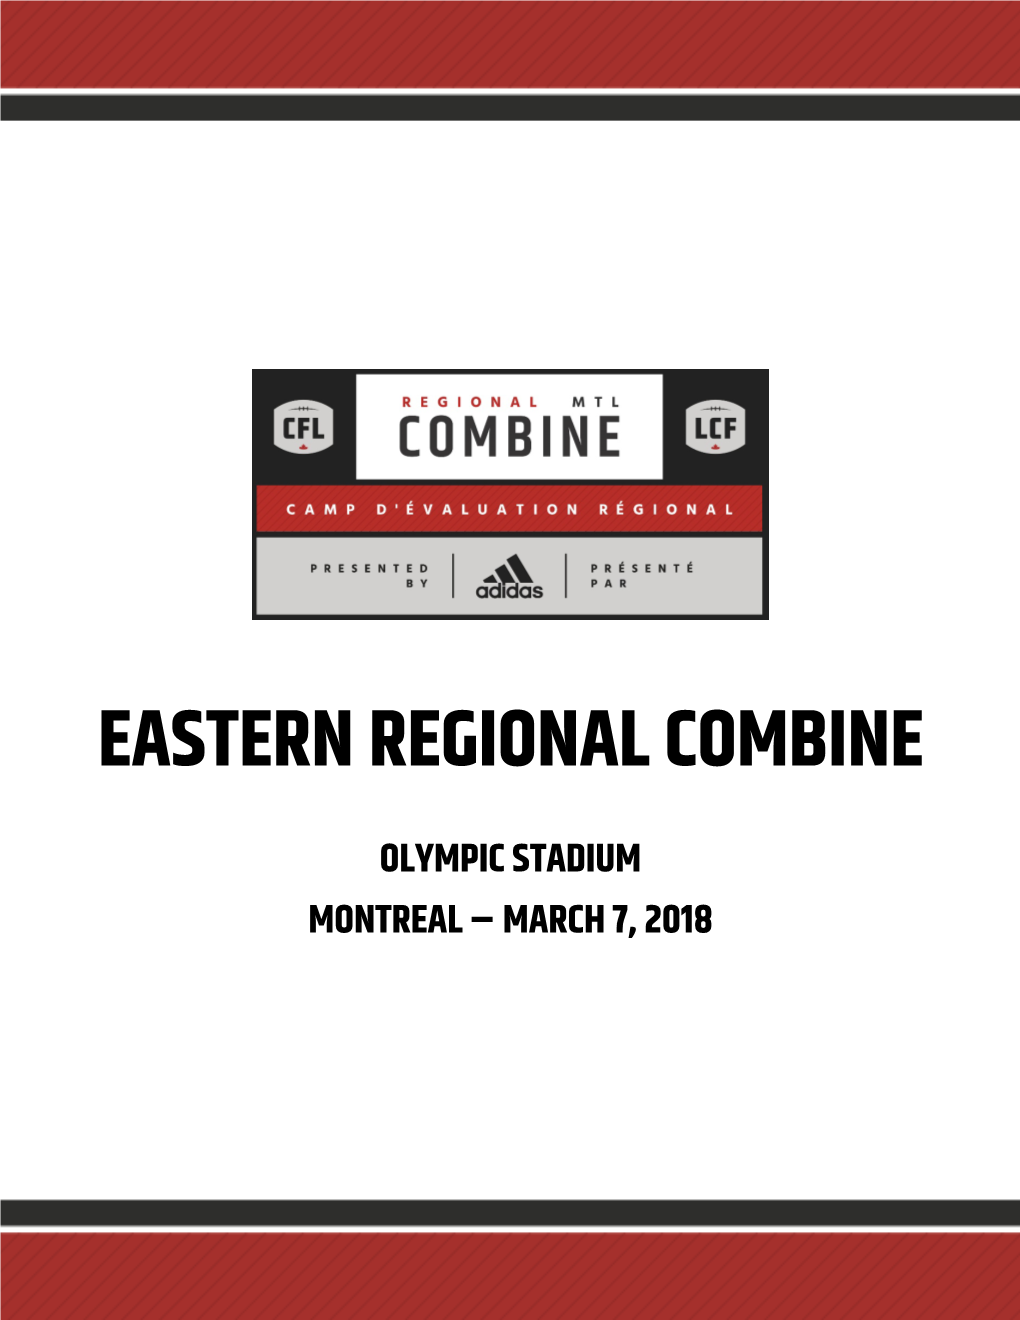 Eastern Regional Combine